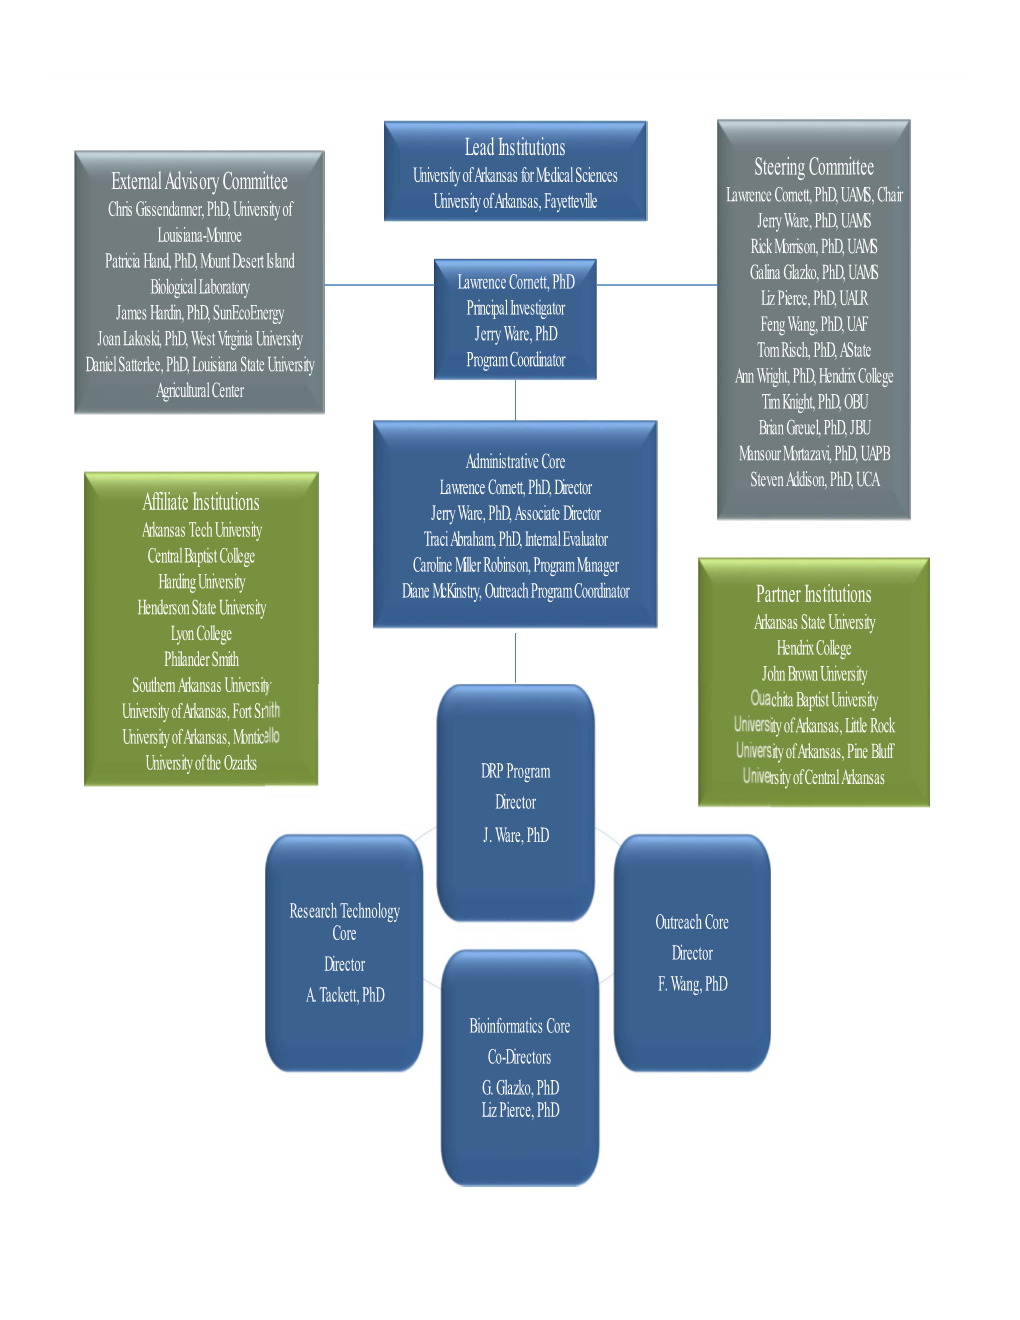 Organizational Structure Arkansas INBRE 2020